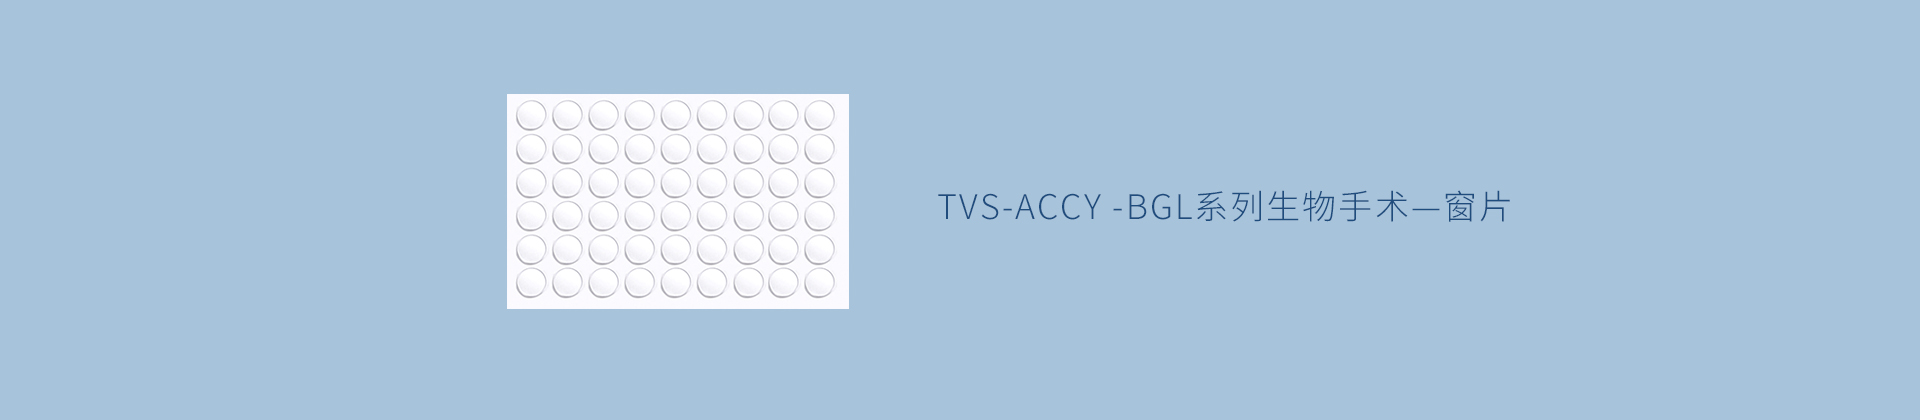 TVS-ACCY -BGL系列生物手术—窗片